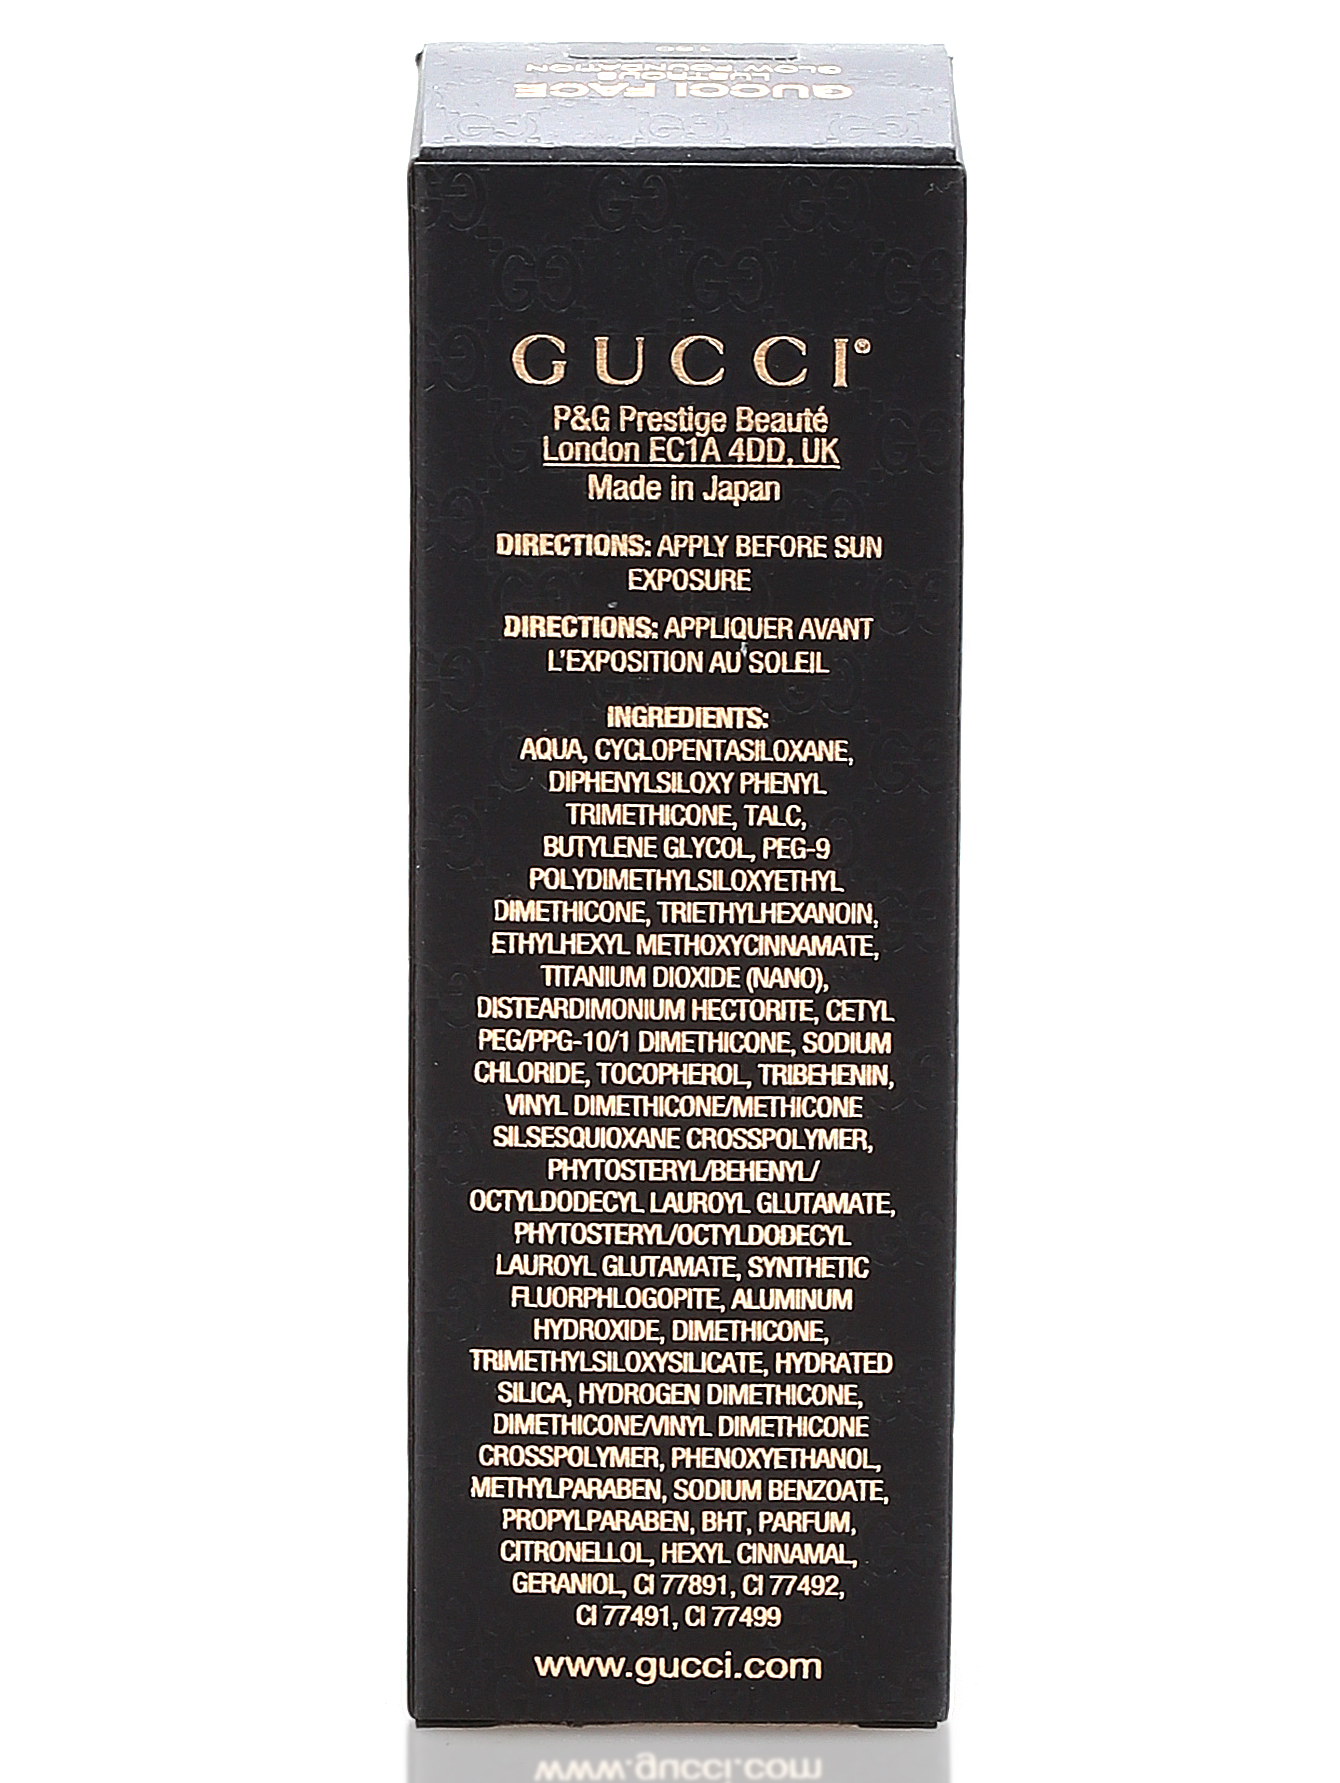 Тональный крем -  N160, Gucci face, 30ml - Модель Верх-Низ